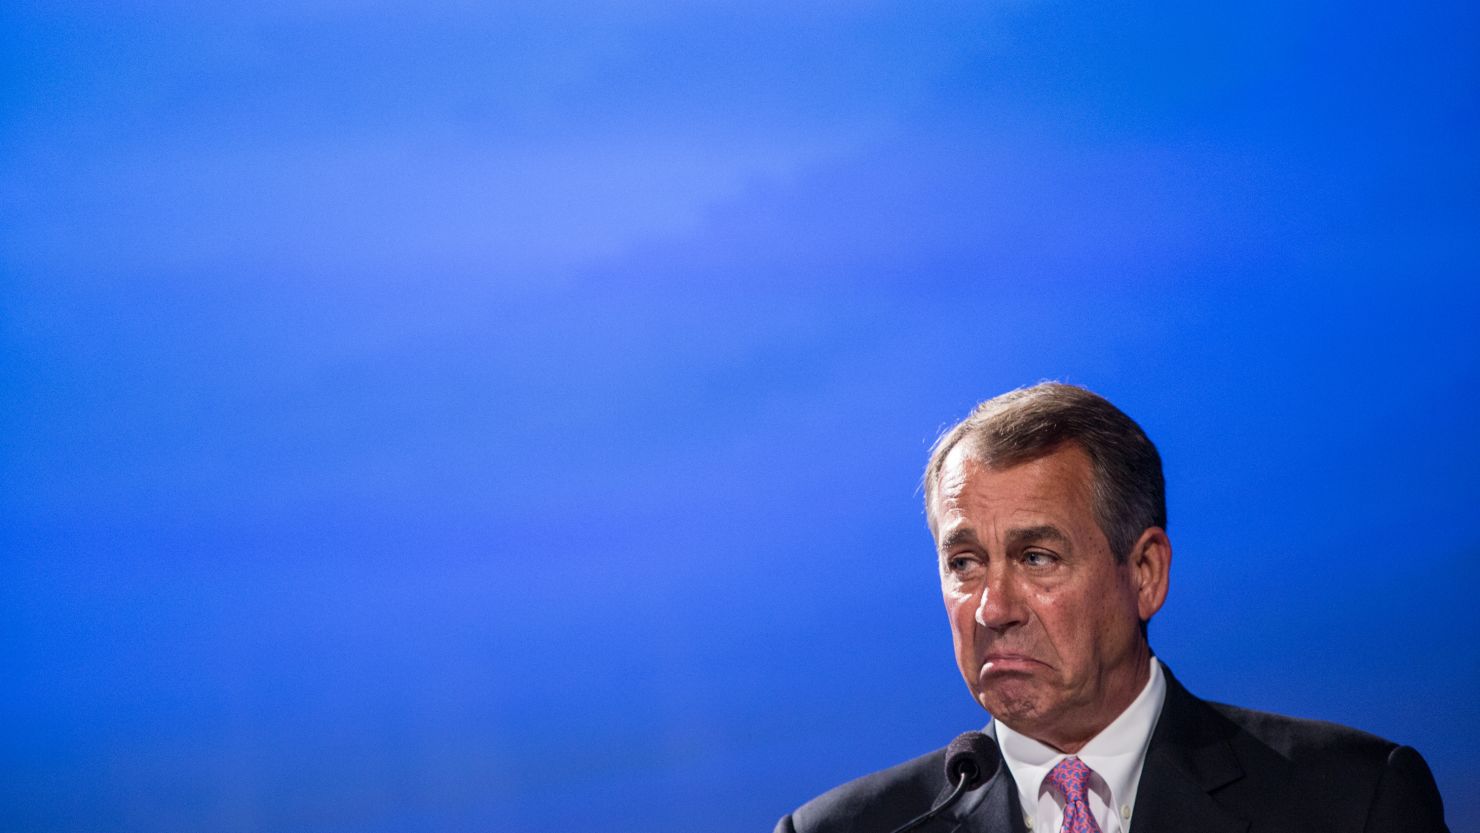 House Speaker John Boehner is threatening another debt-ceiling showdown, says John Avlon.